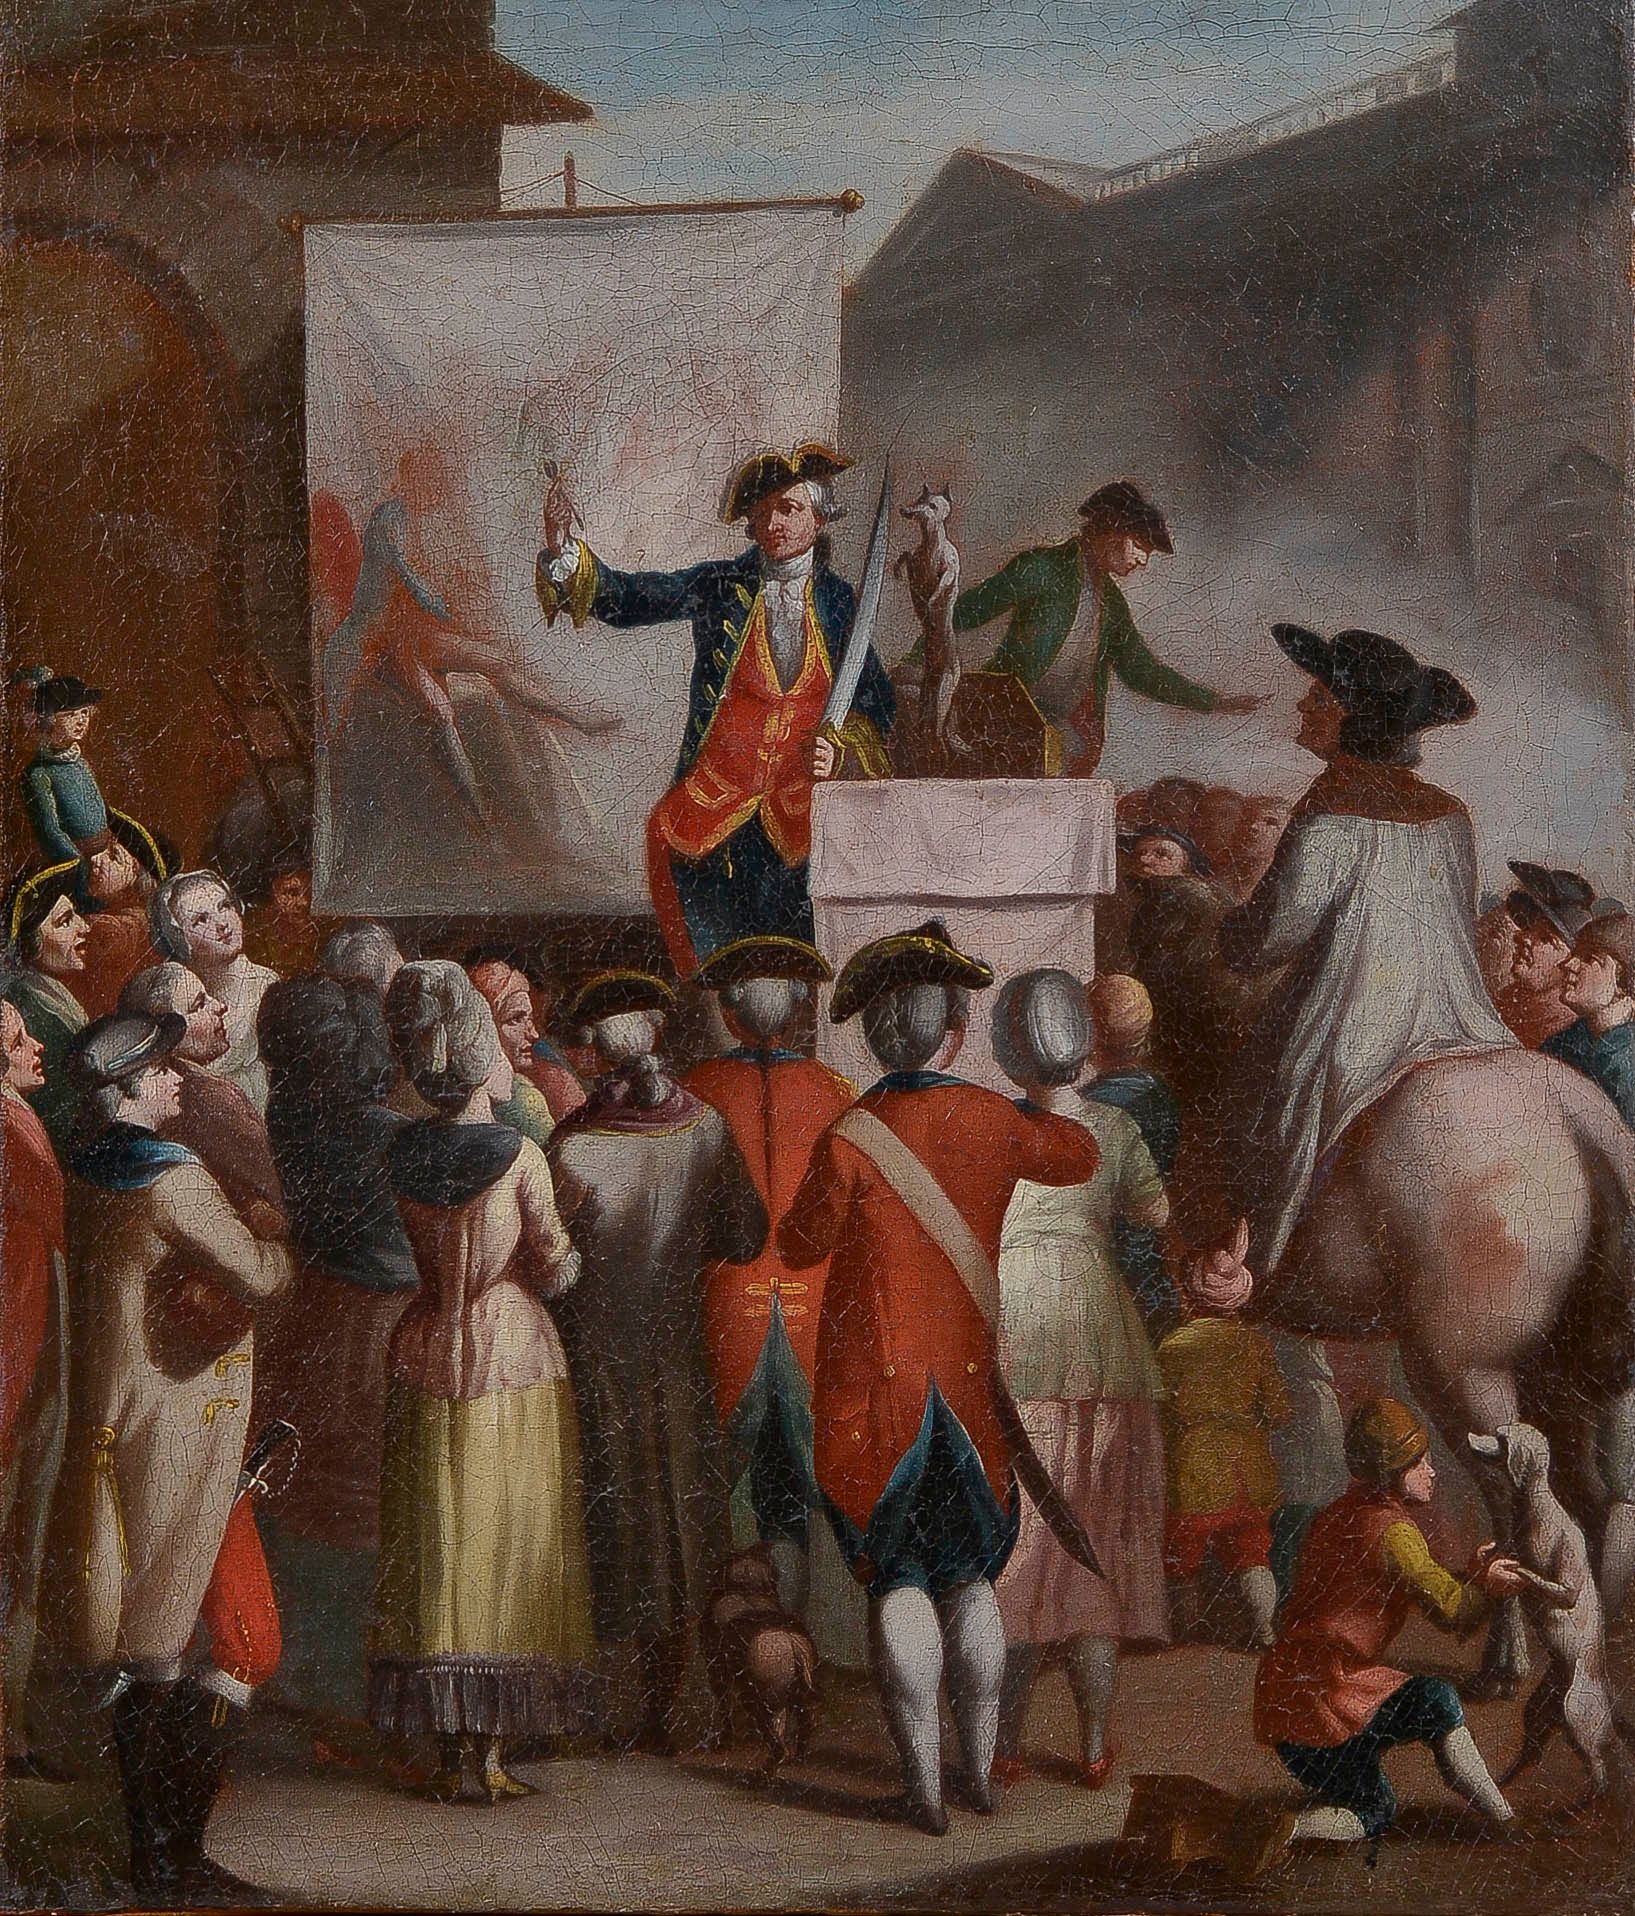 Null École française, vers 1770

Les saltimbanques

Huile sur toile

74 x 62 cm